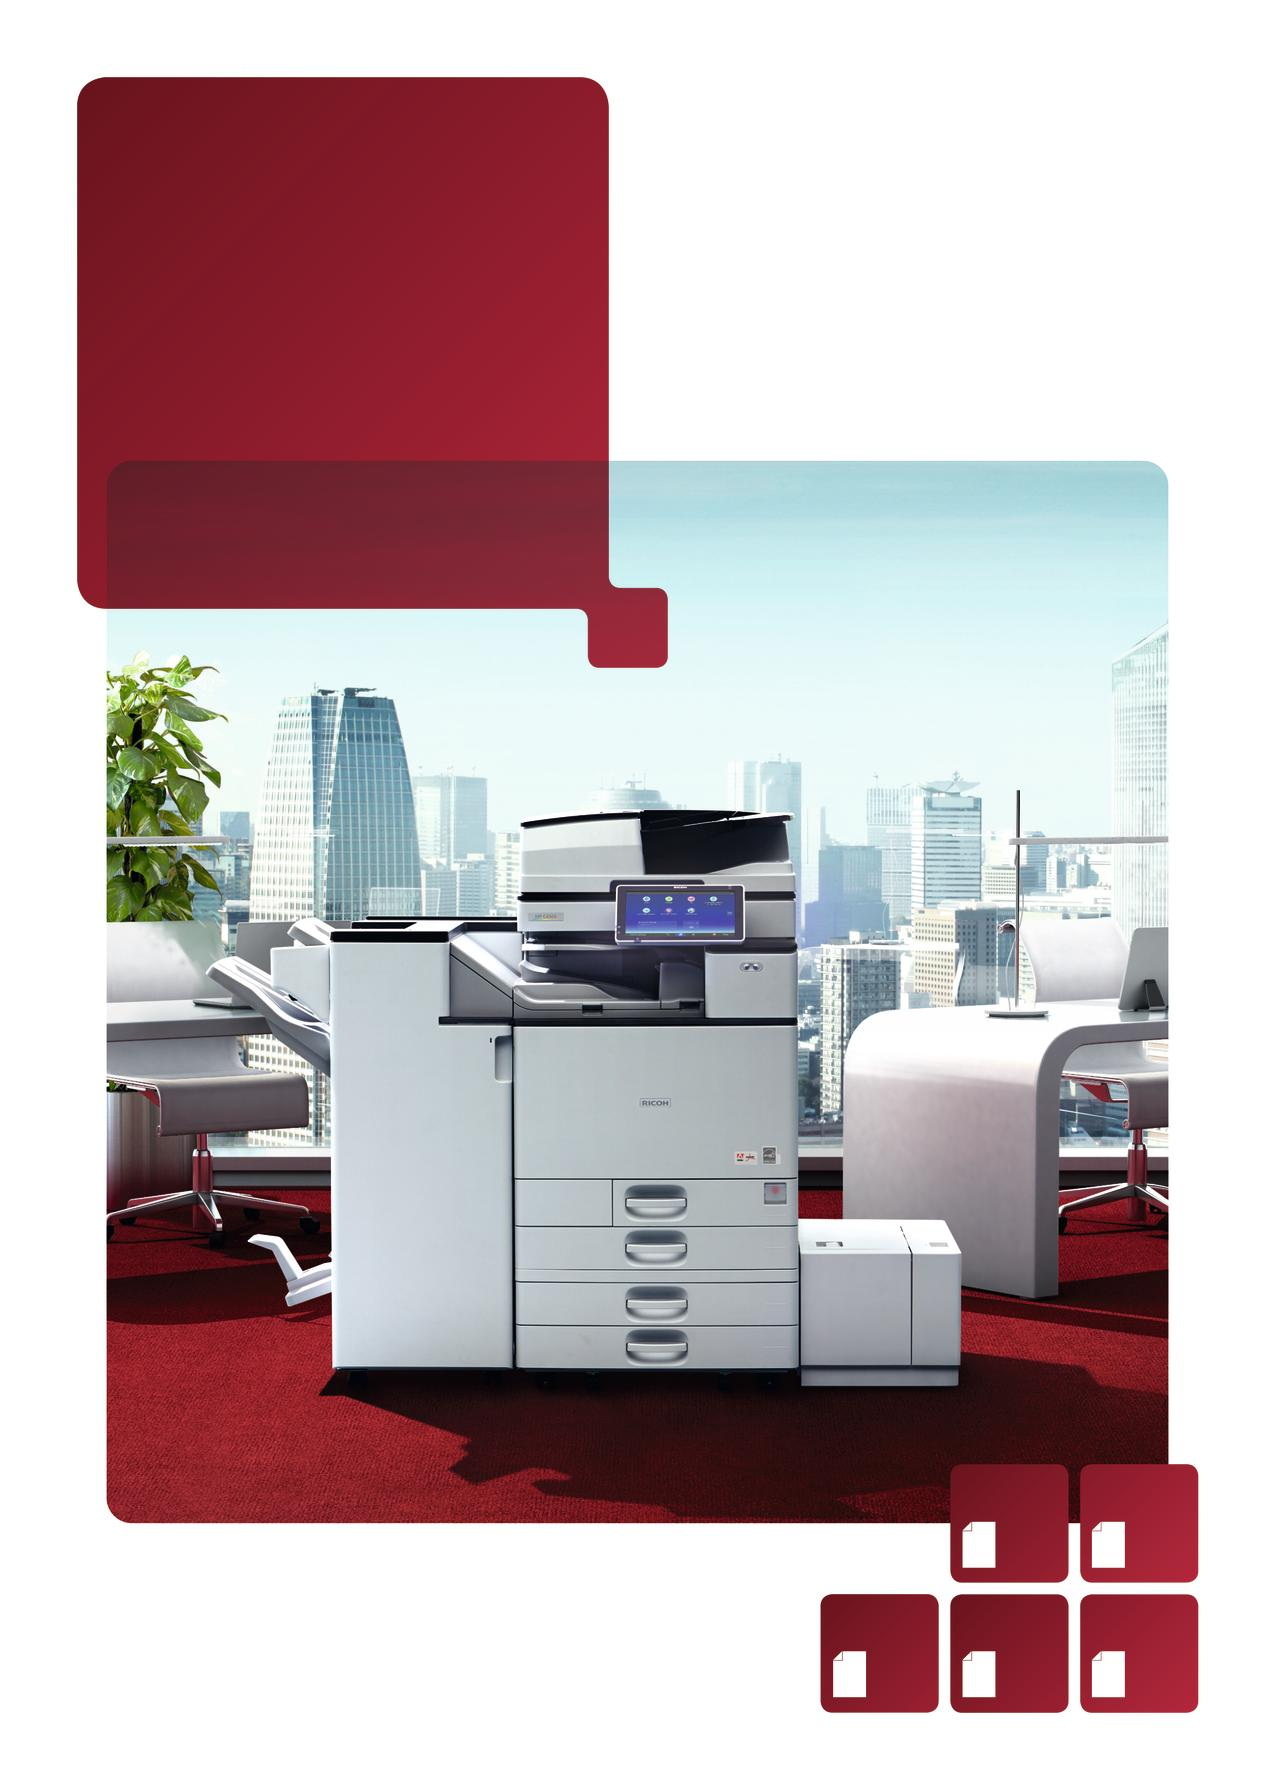 Barevné multifunkční tiskárny MP C3004(A)SP MP C3504(A)SP MP C4504(A)SP MP C5504(A)SP MP C6004SP Kopírka Tiskárna Fax